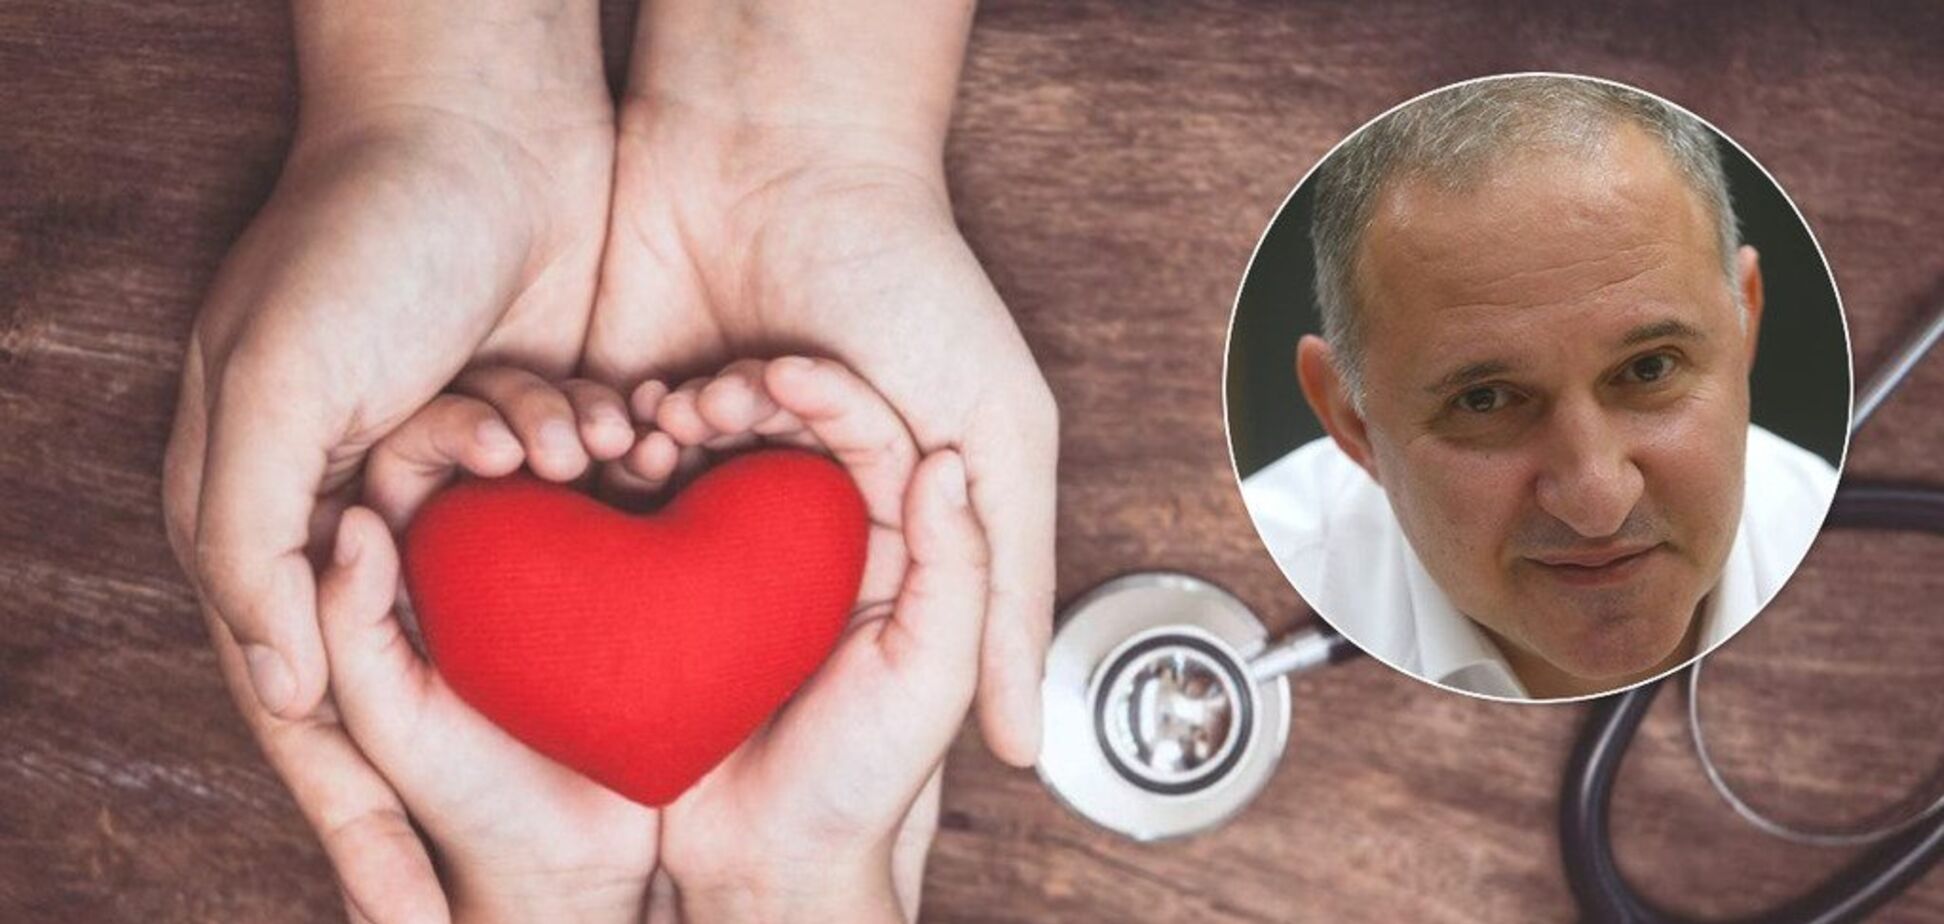 Сердца украинцев: кардиохирург рассказал, откуда берутся пороки и что может довести до инфаркта